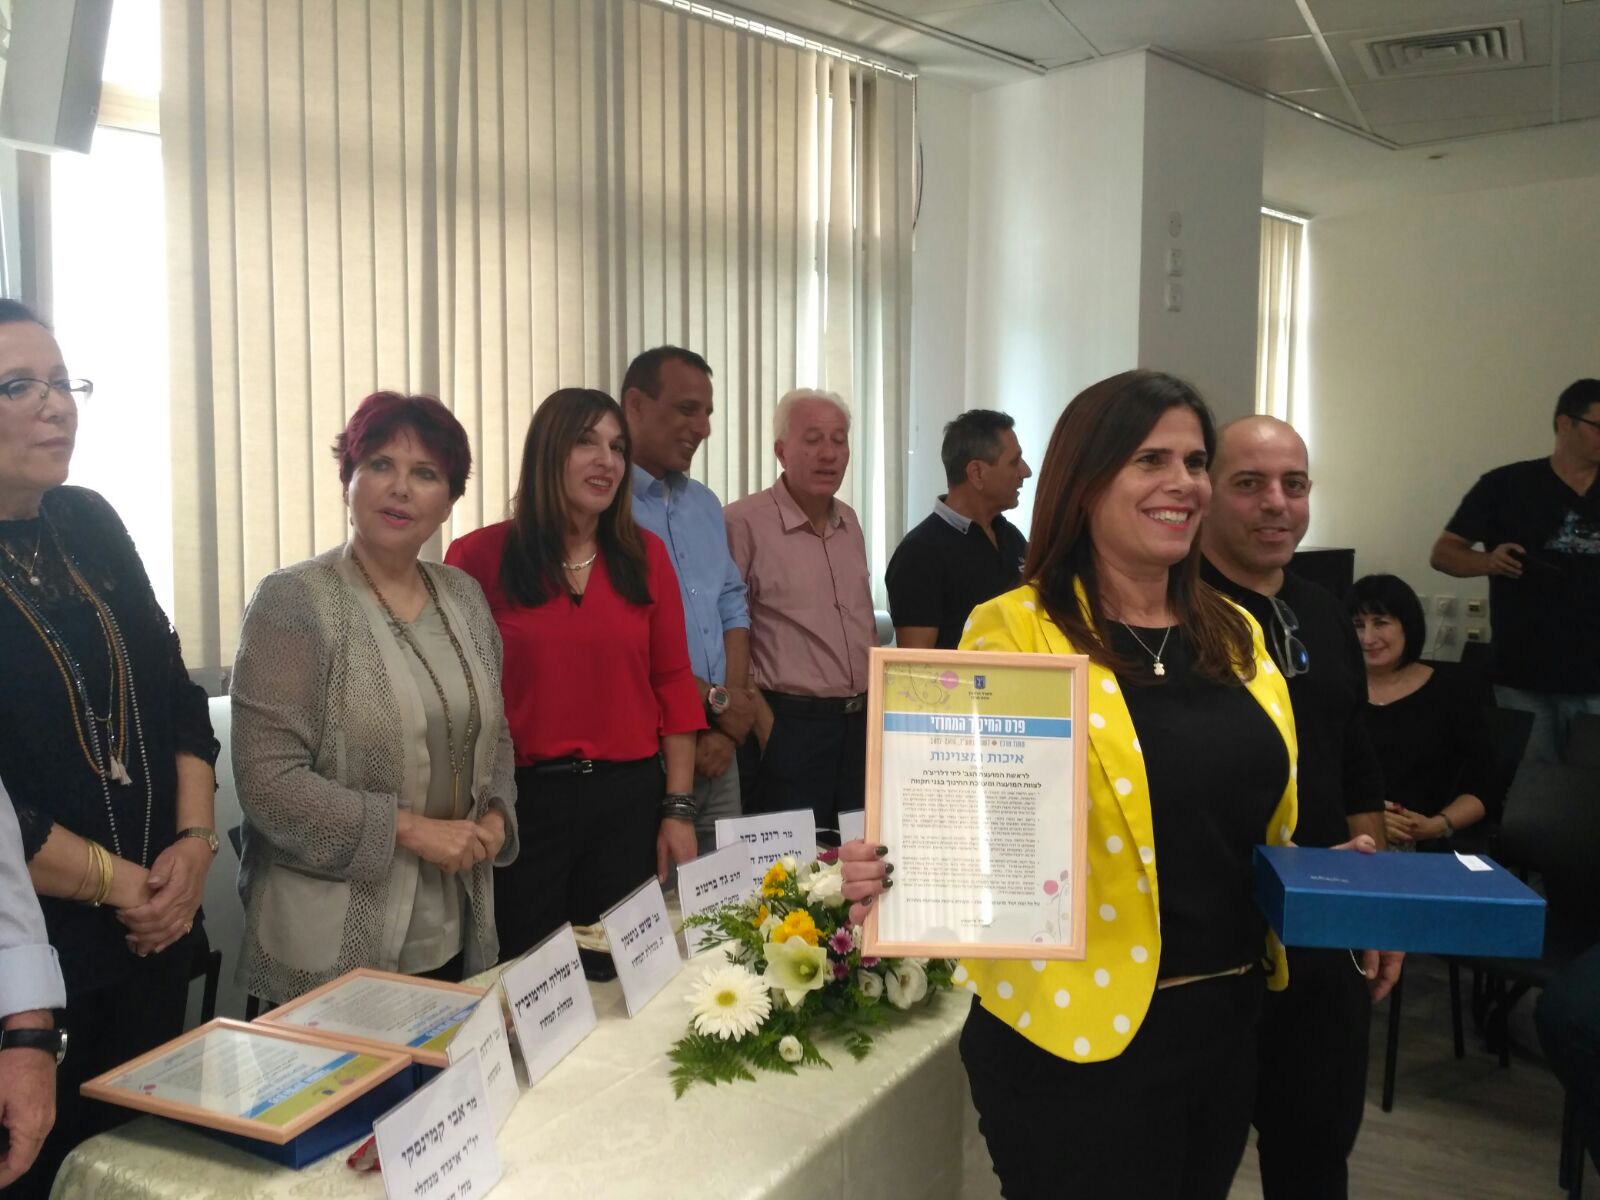 מחוז מרכז במשרד החינוך העניק את פרס החינוך המחוזי לרשויות גני תקווה